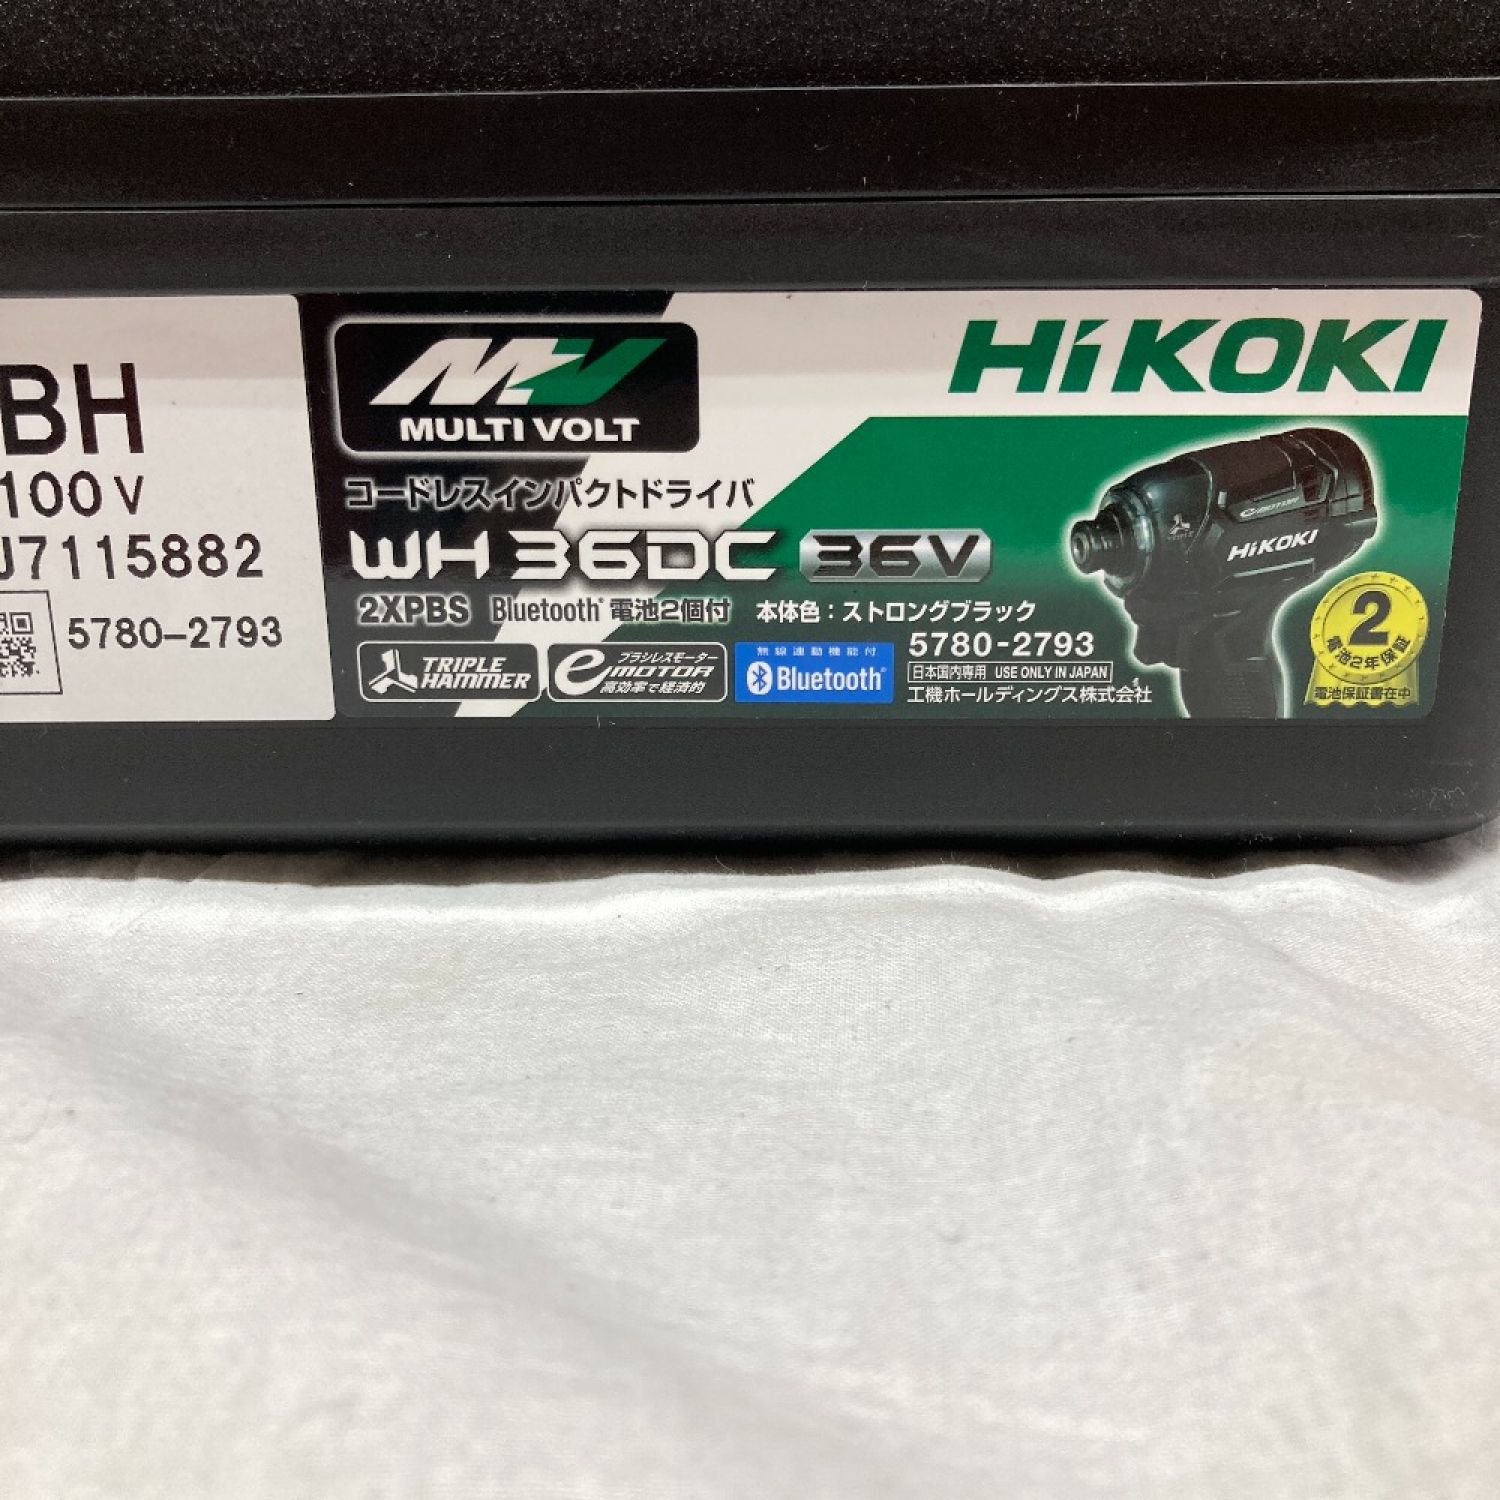 中古】 HiKOKI ハイコーキ インパクトドライバ WH36DC 2XPBS J7115436 ...